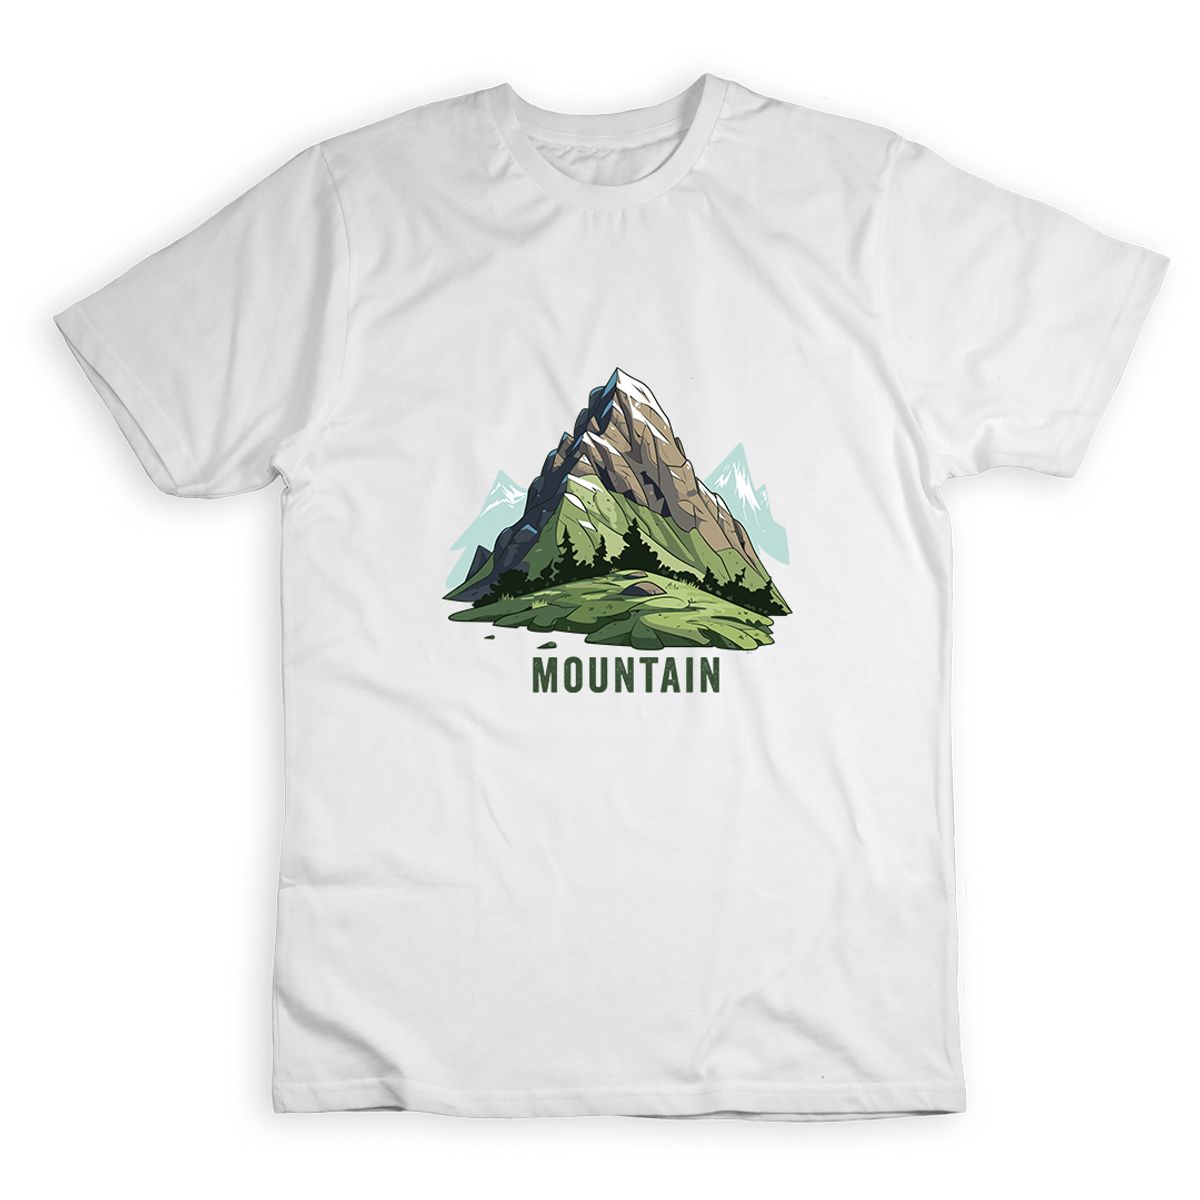 Nome do produto: Mountain